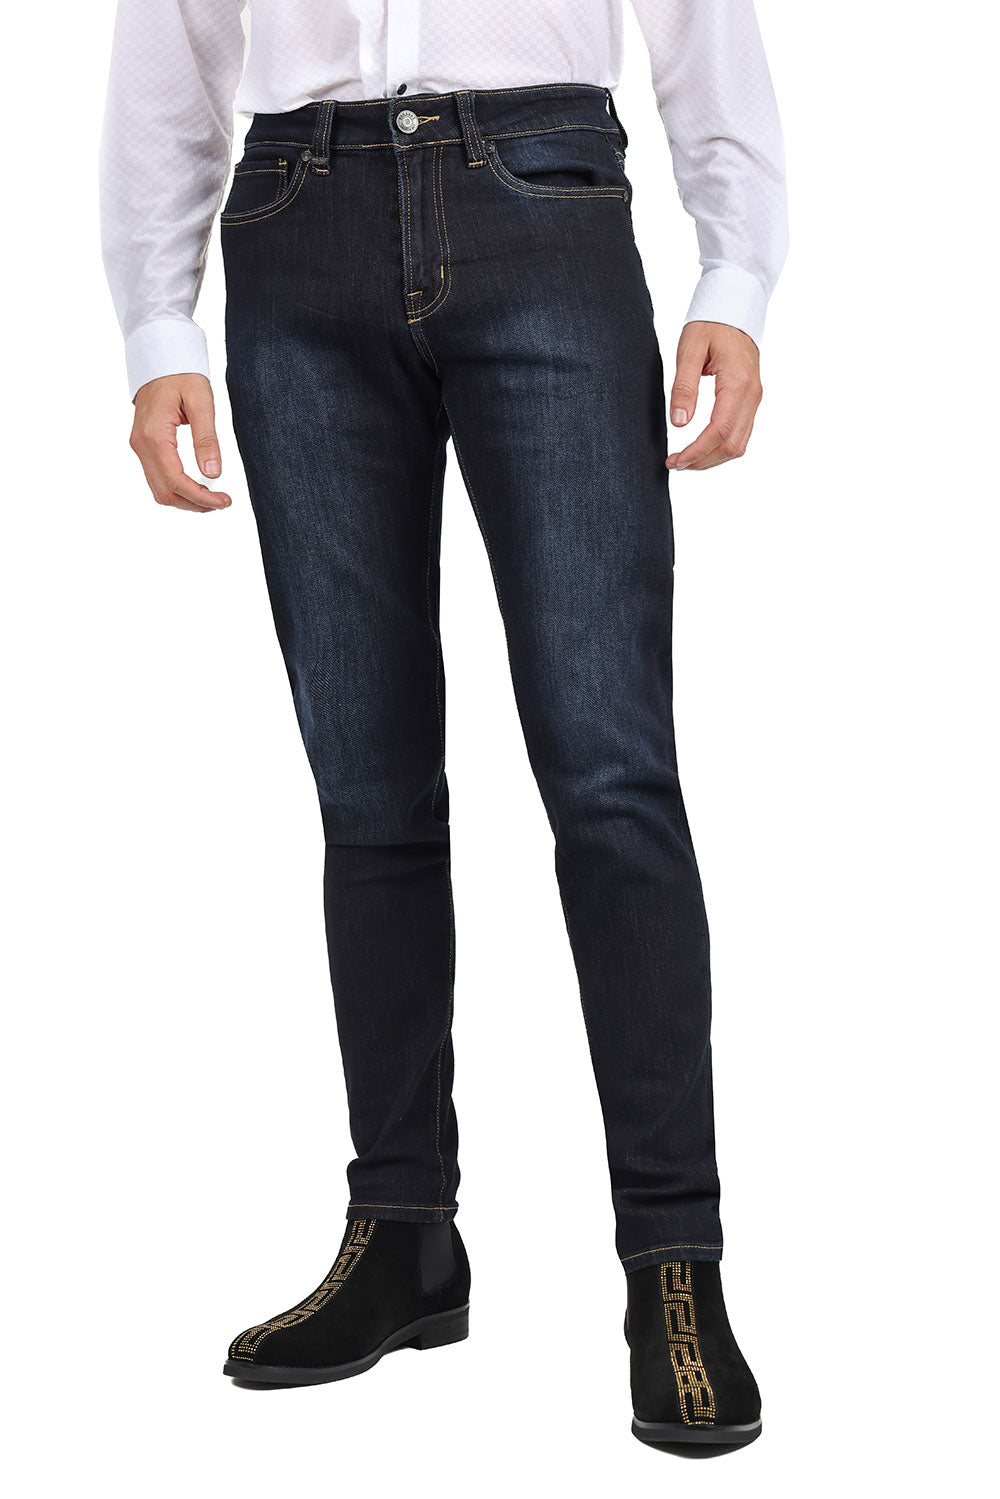 Barabas Men's Slim Fit Dark Blue Premium Denim Jeans 2JE02SL